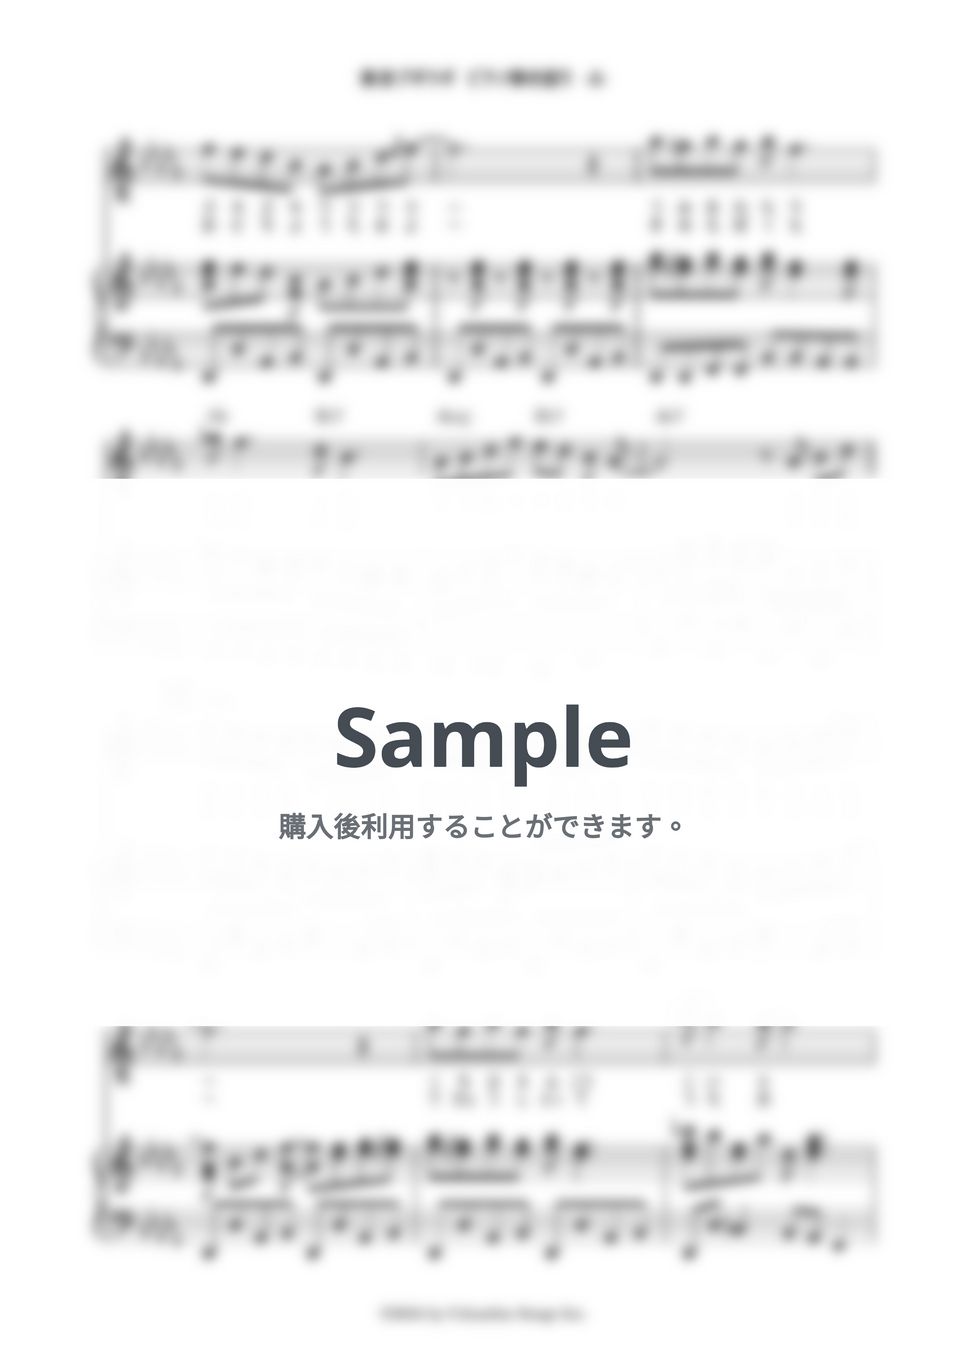 福来スズ子 - 東京ブギウギ (ピアノ弾き語り) by 鈴木建作